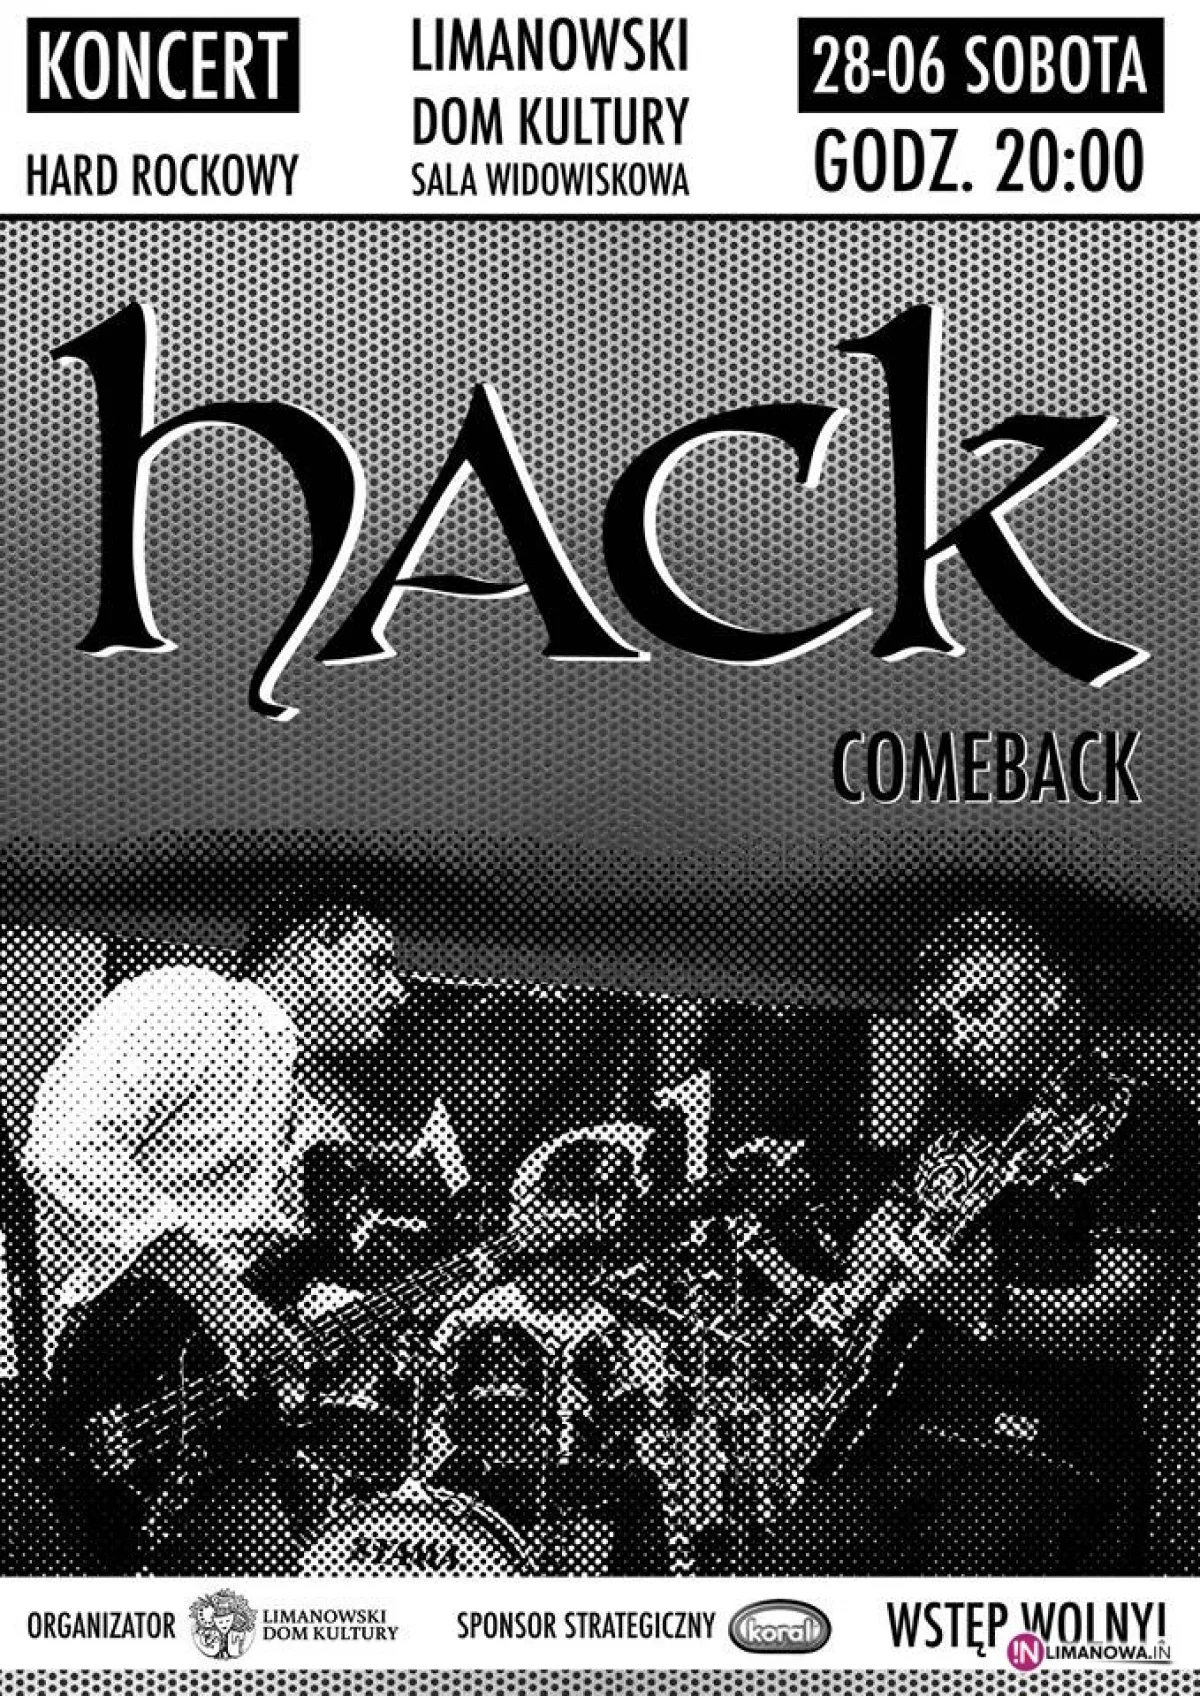 'Hack' - limanowski rock, reaktywacja po latach